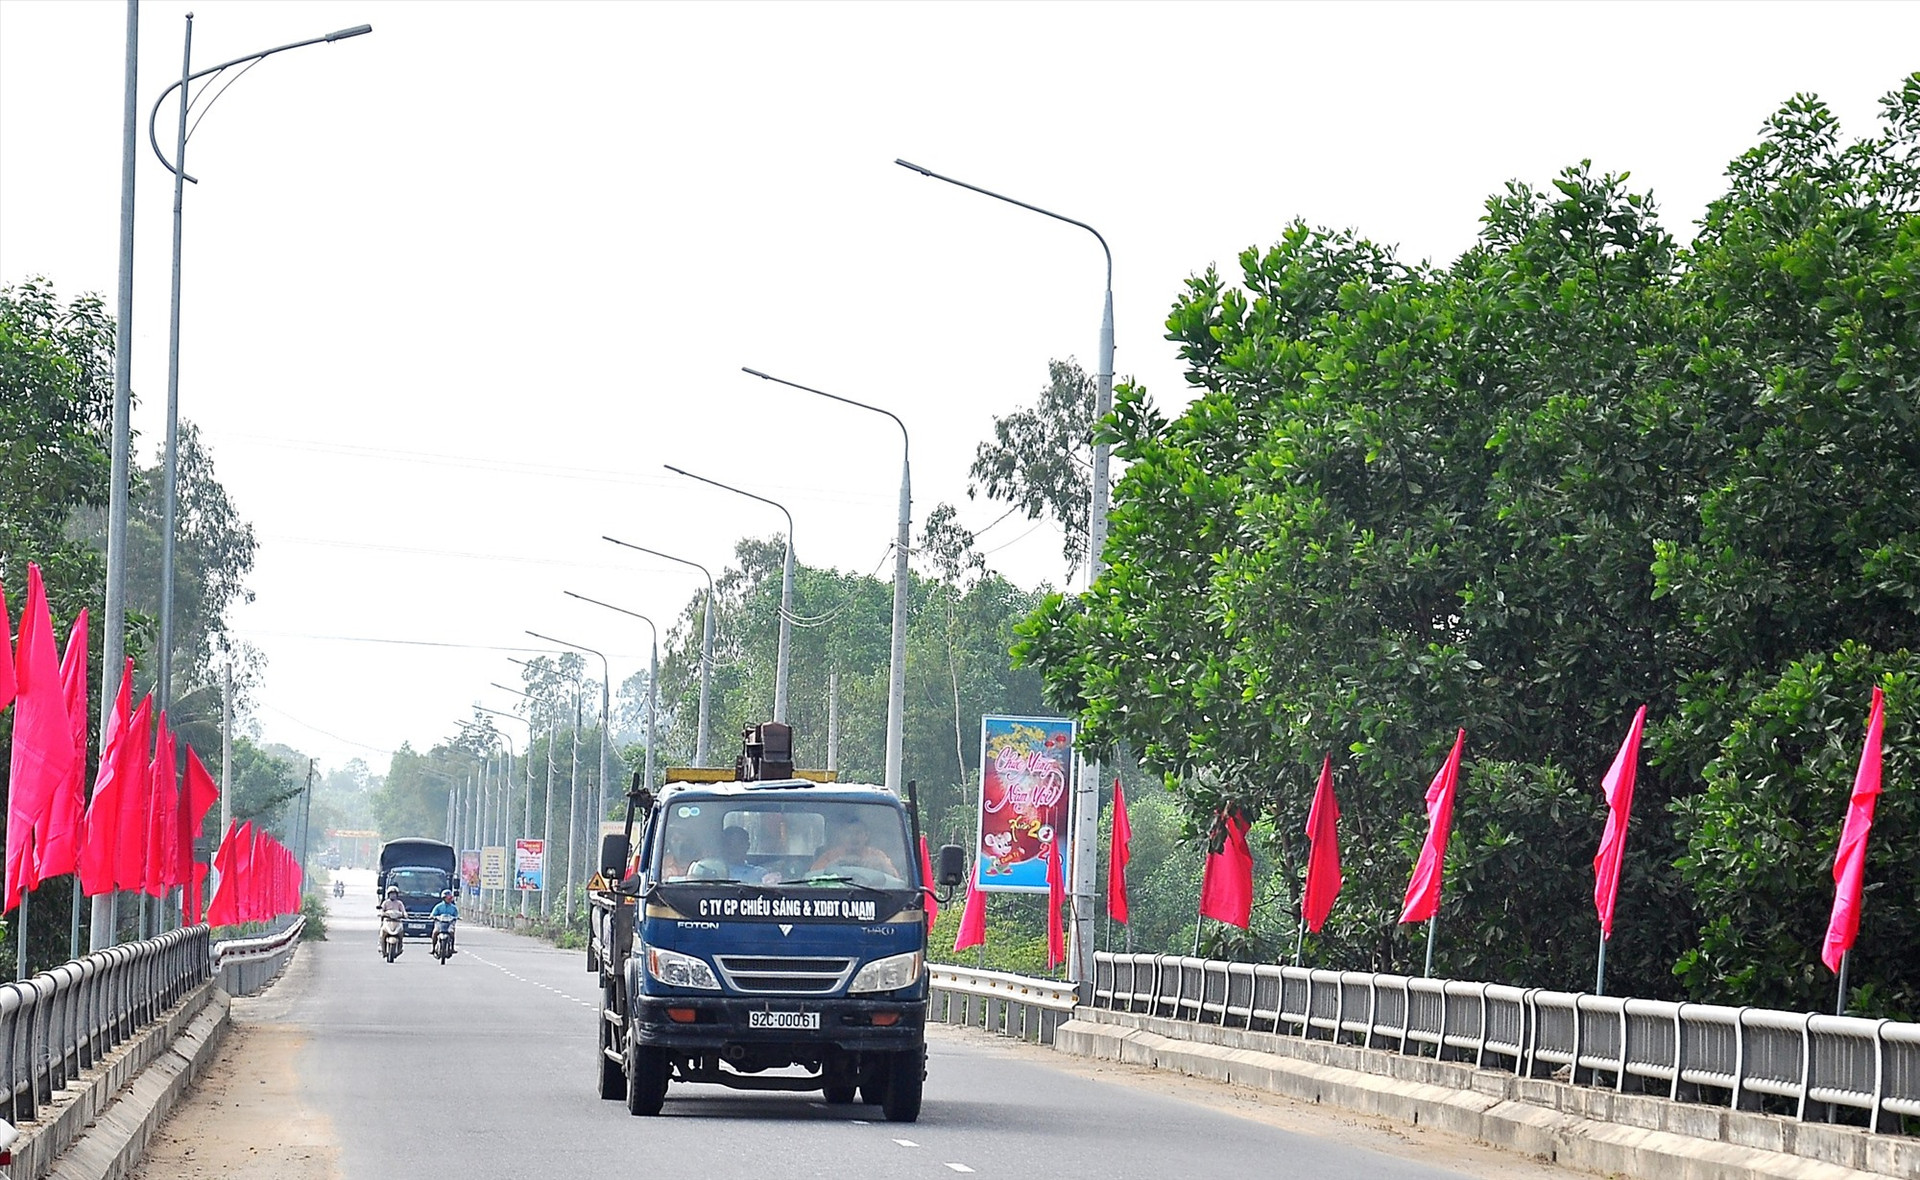 Hệ thống cơ sở hạ tầng, giao thông ngày càng được đầu tư khang trang tạo động lực phát triển kinh tế cho huyện Phú Ninh. Ảnh: VINH ANH